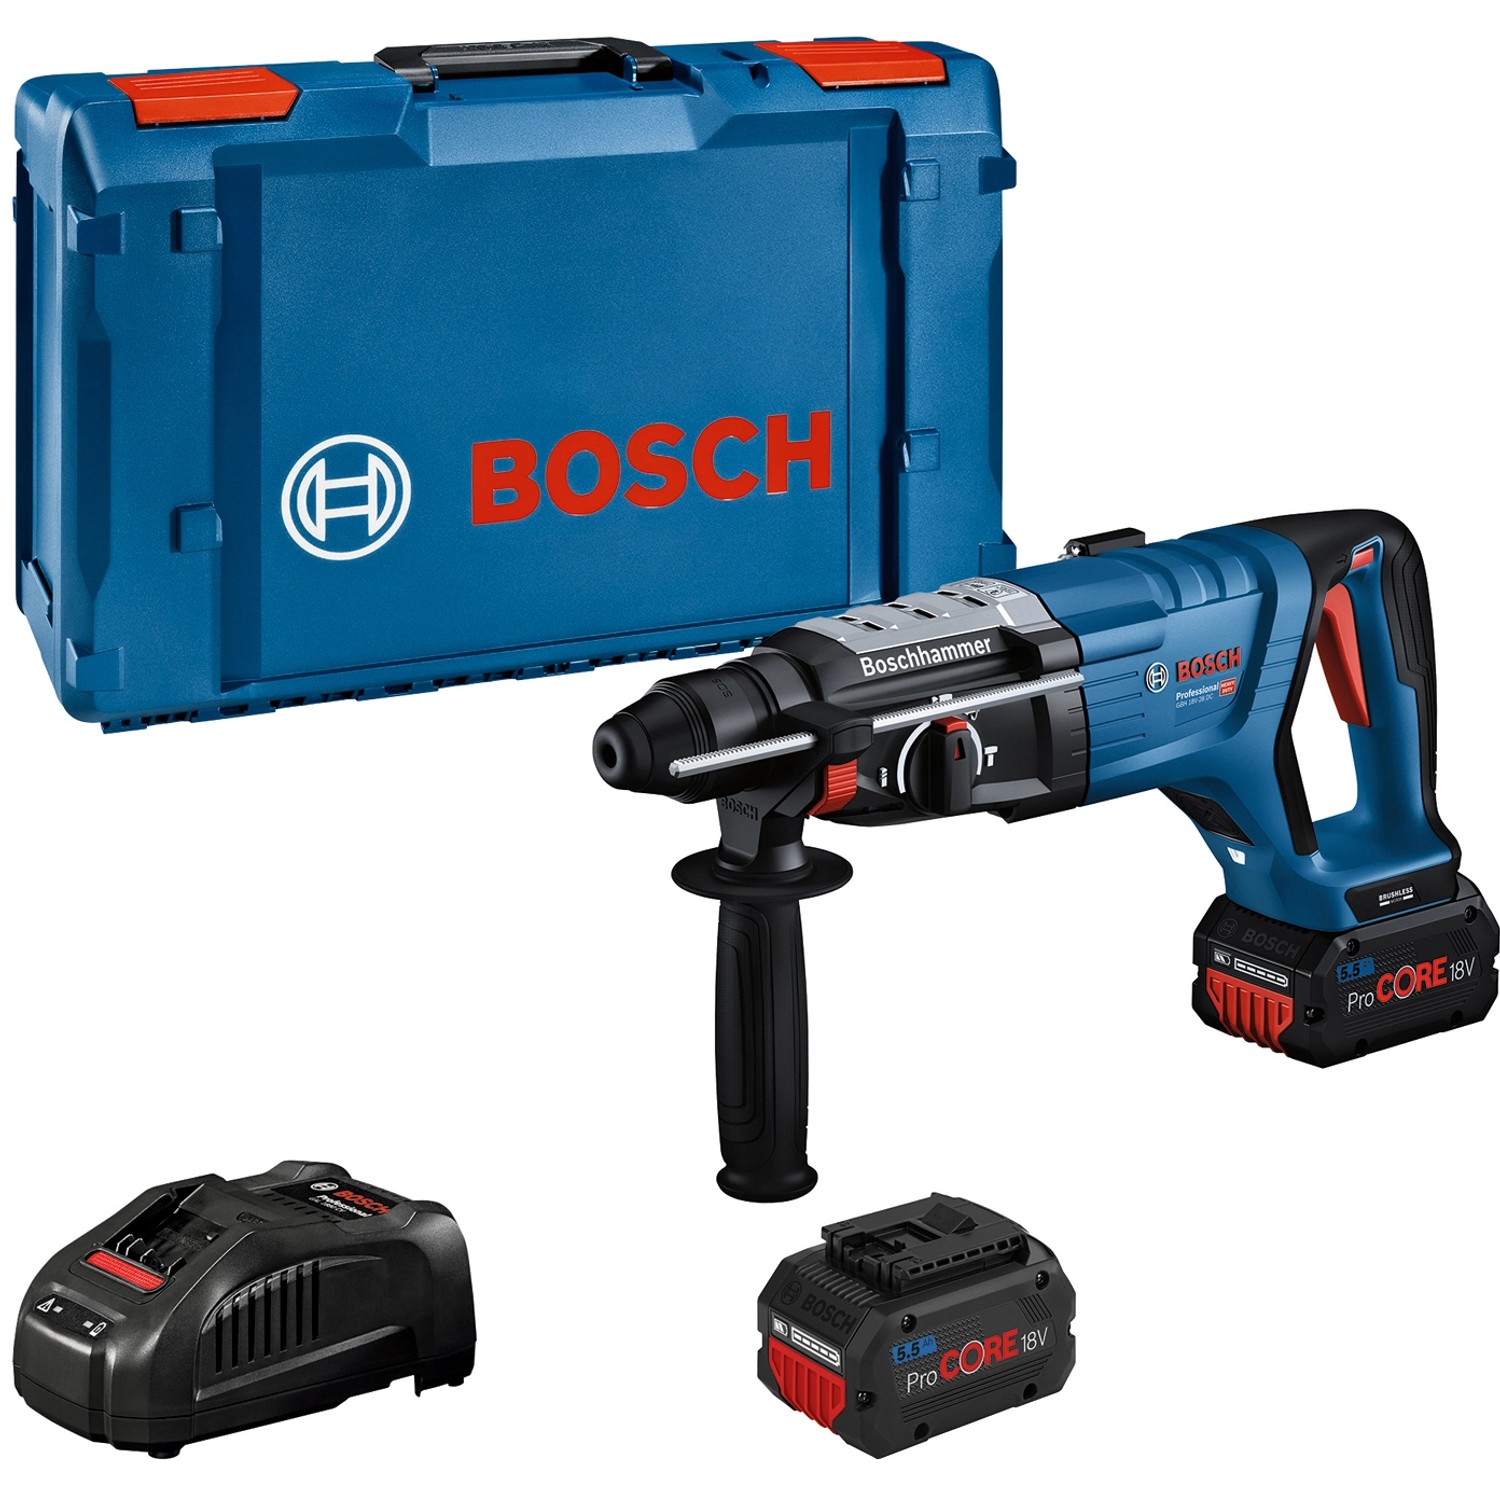 Bosch Professional Akku-Bohrhammer GBH 18V-28 DC mit 2x 5.5Ah & GAL in XL-Boxx